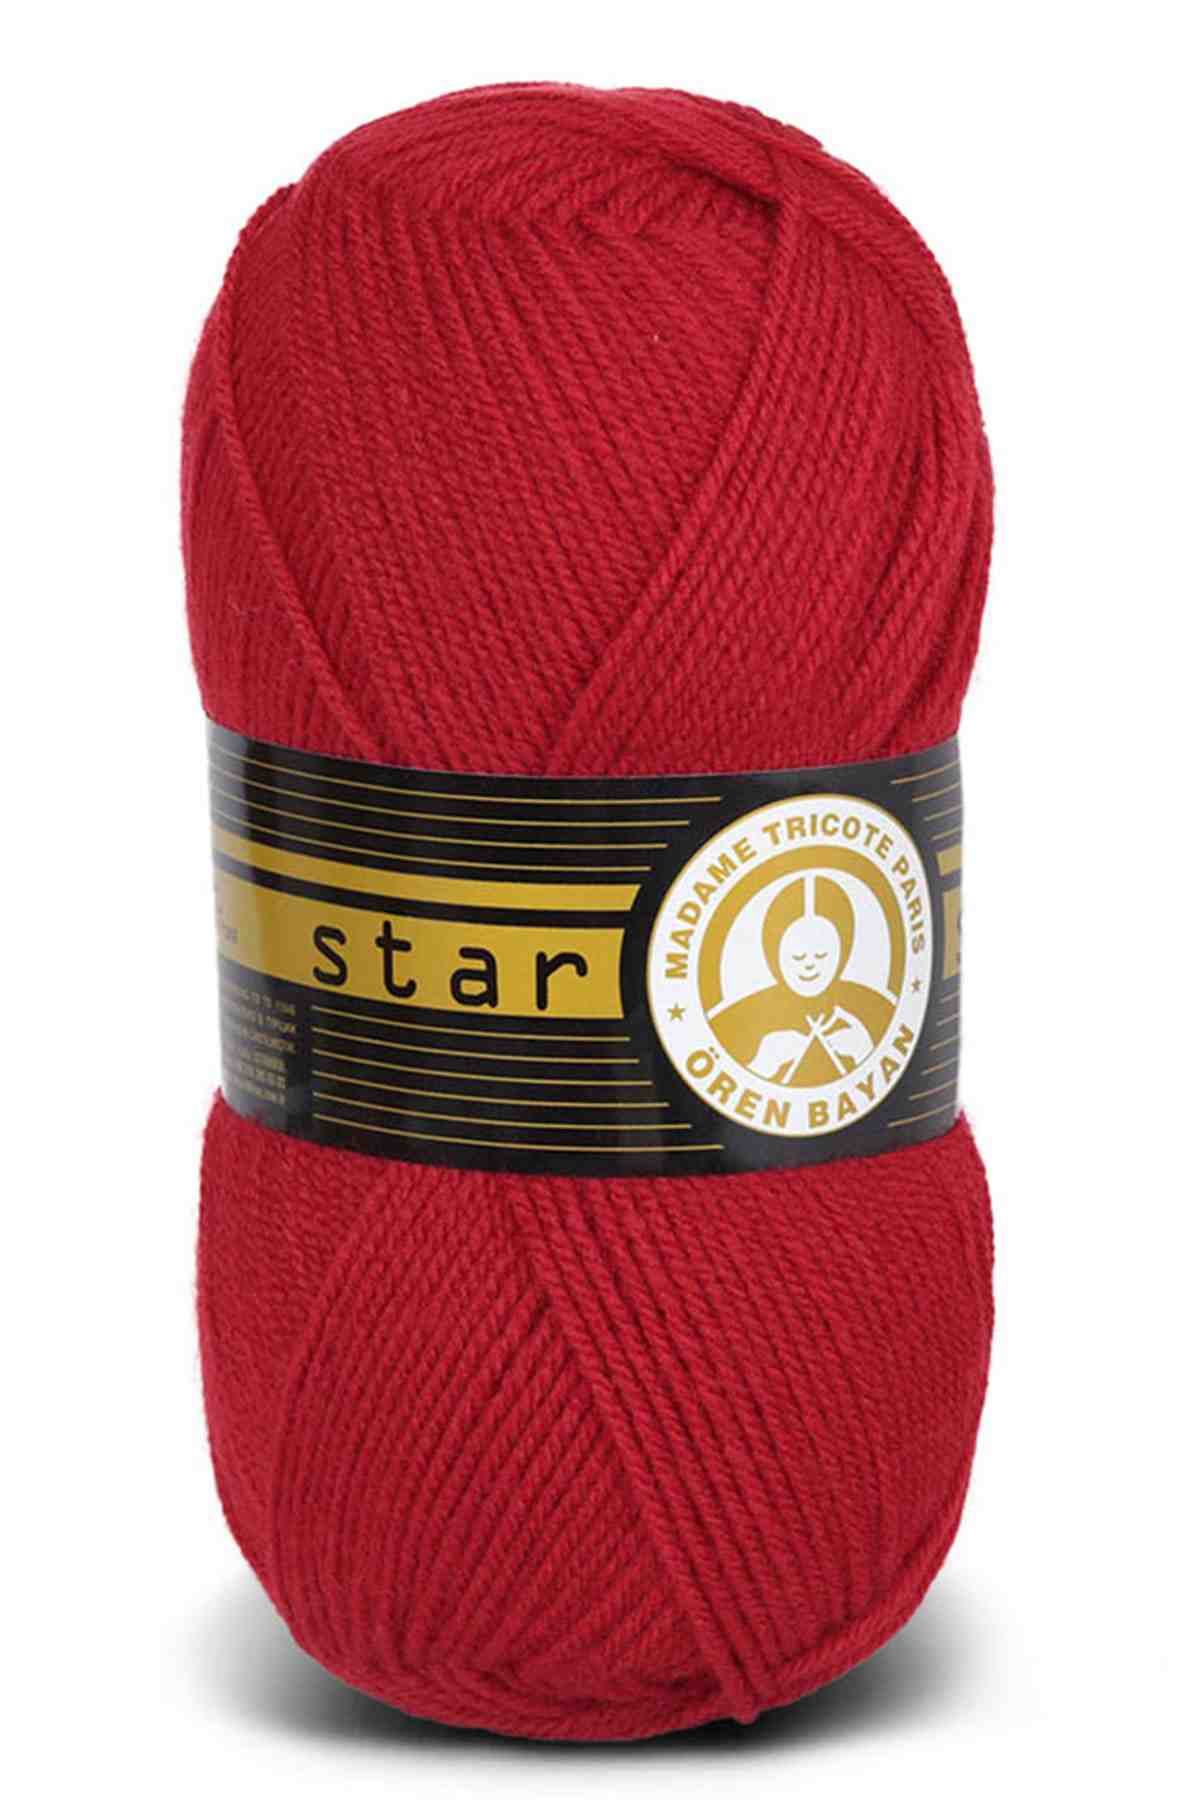 Madame Tricote Paris Star Acrylic Yarn